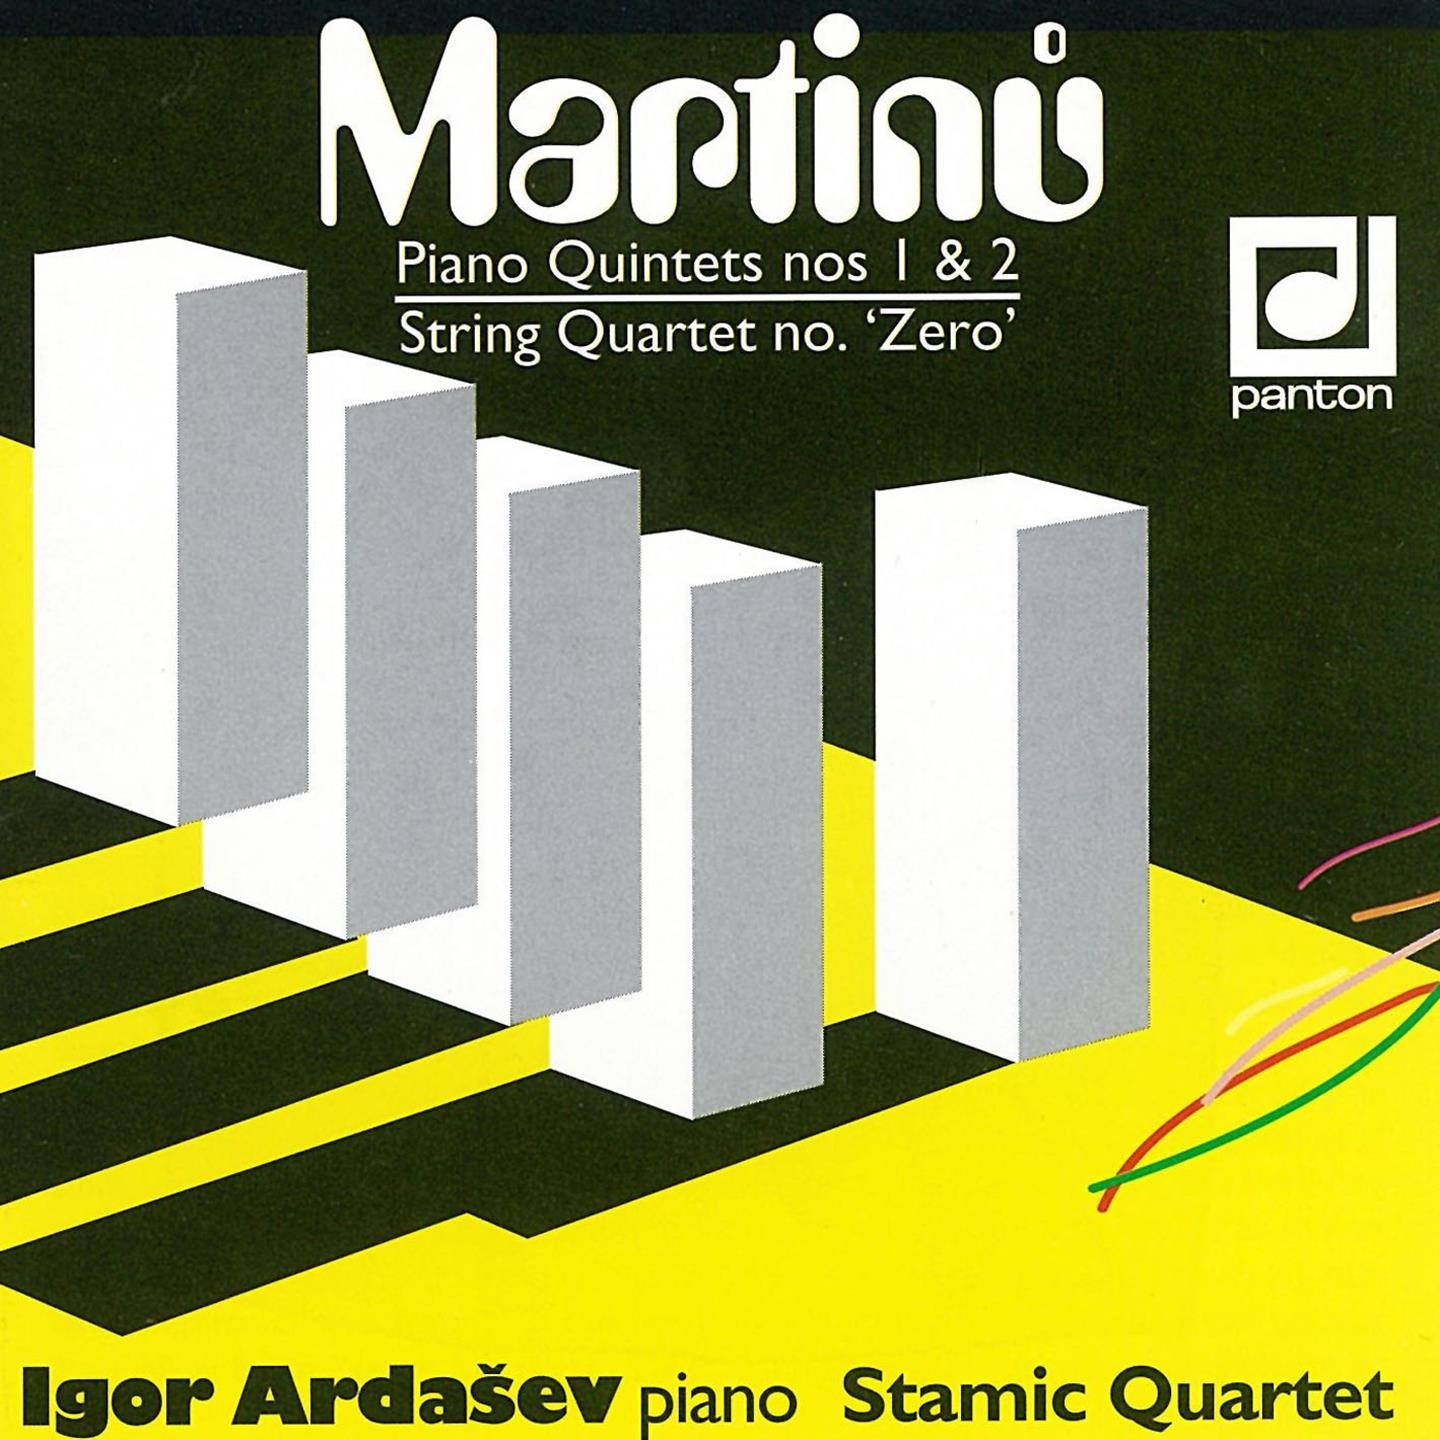 Piano Quintet No. 2, H. 298: IV. Largo - Allegro